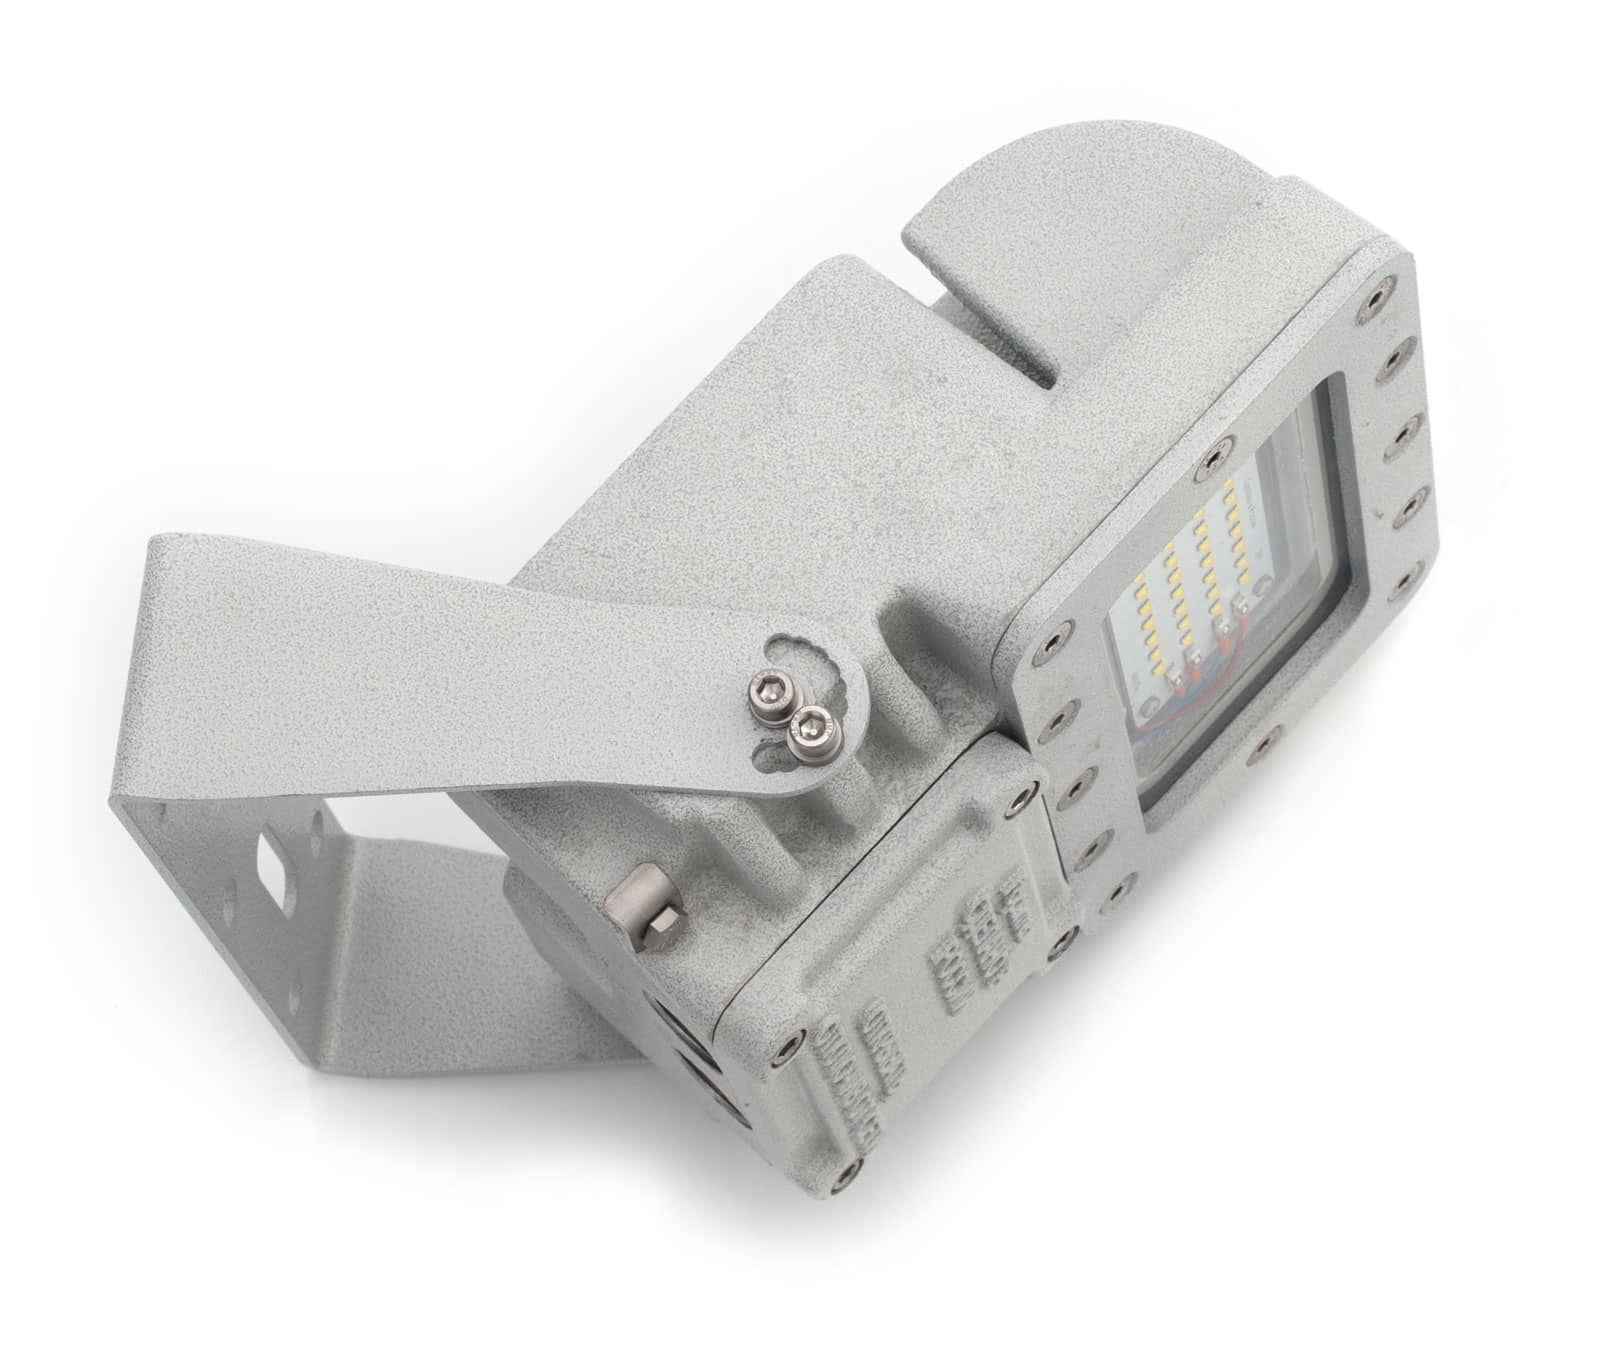 Explosion-proof LED light fixtures SGU01(VSP4)